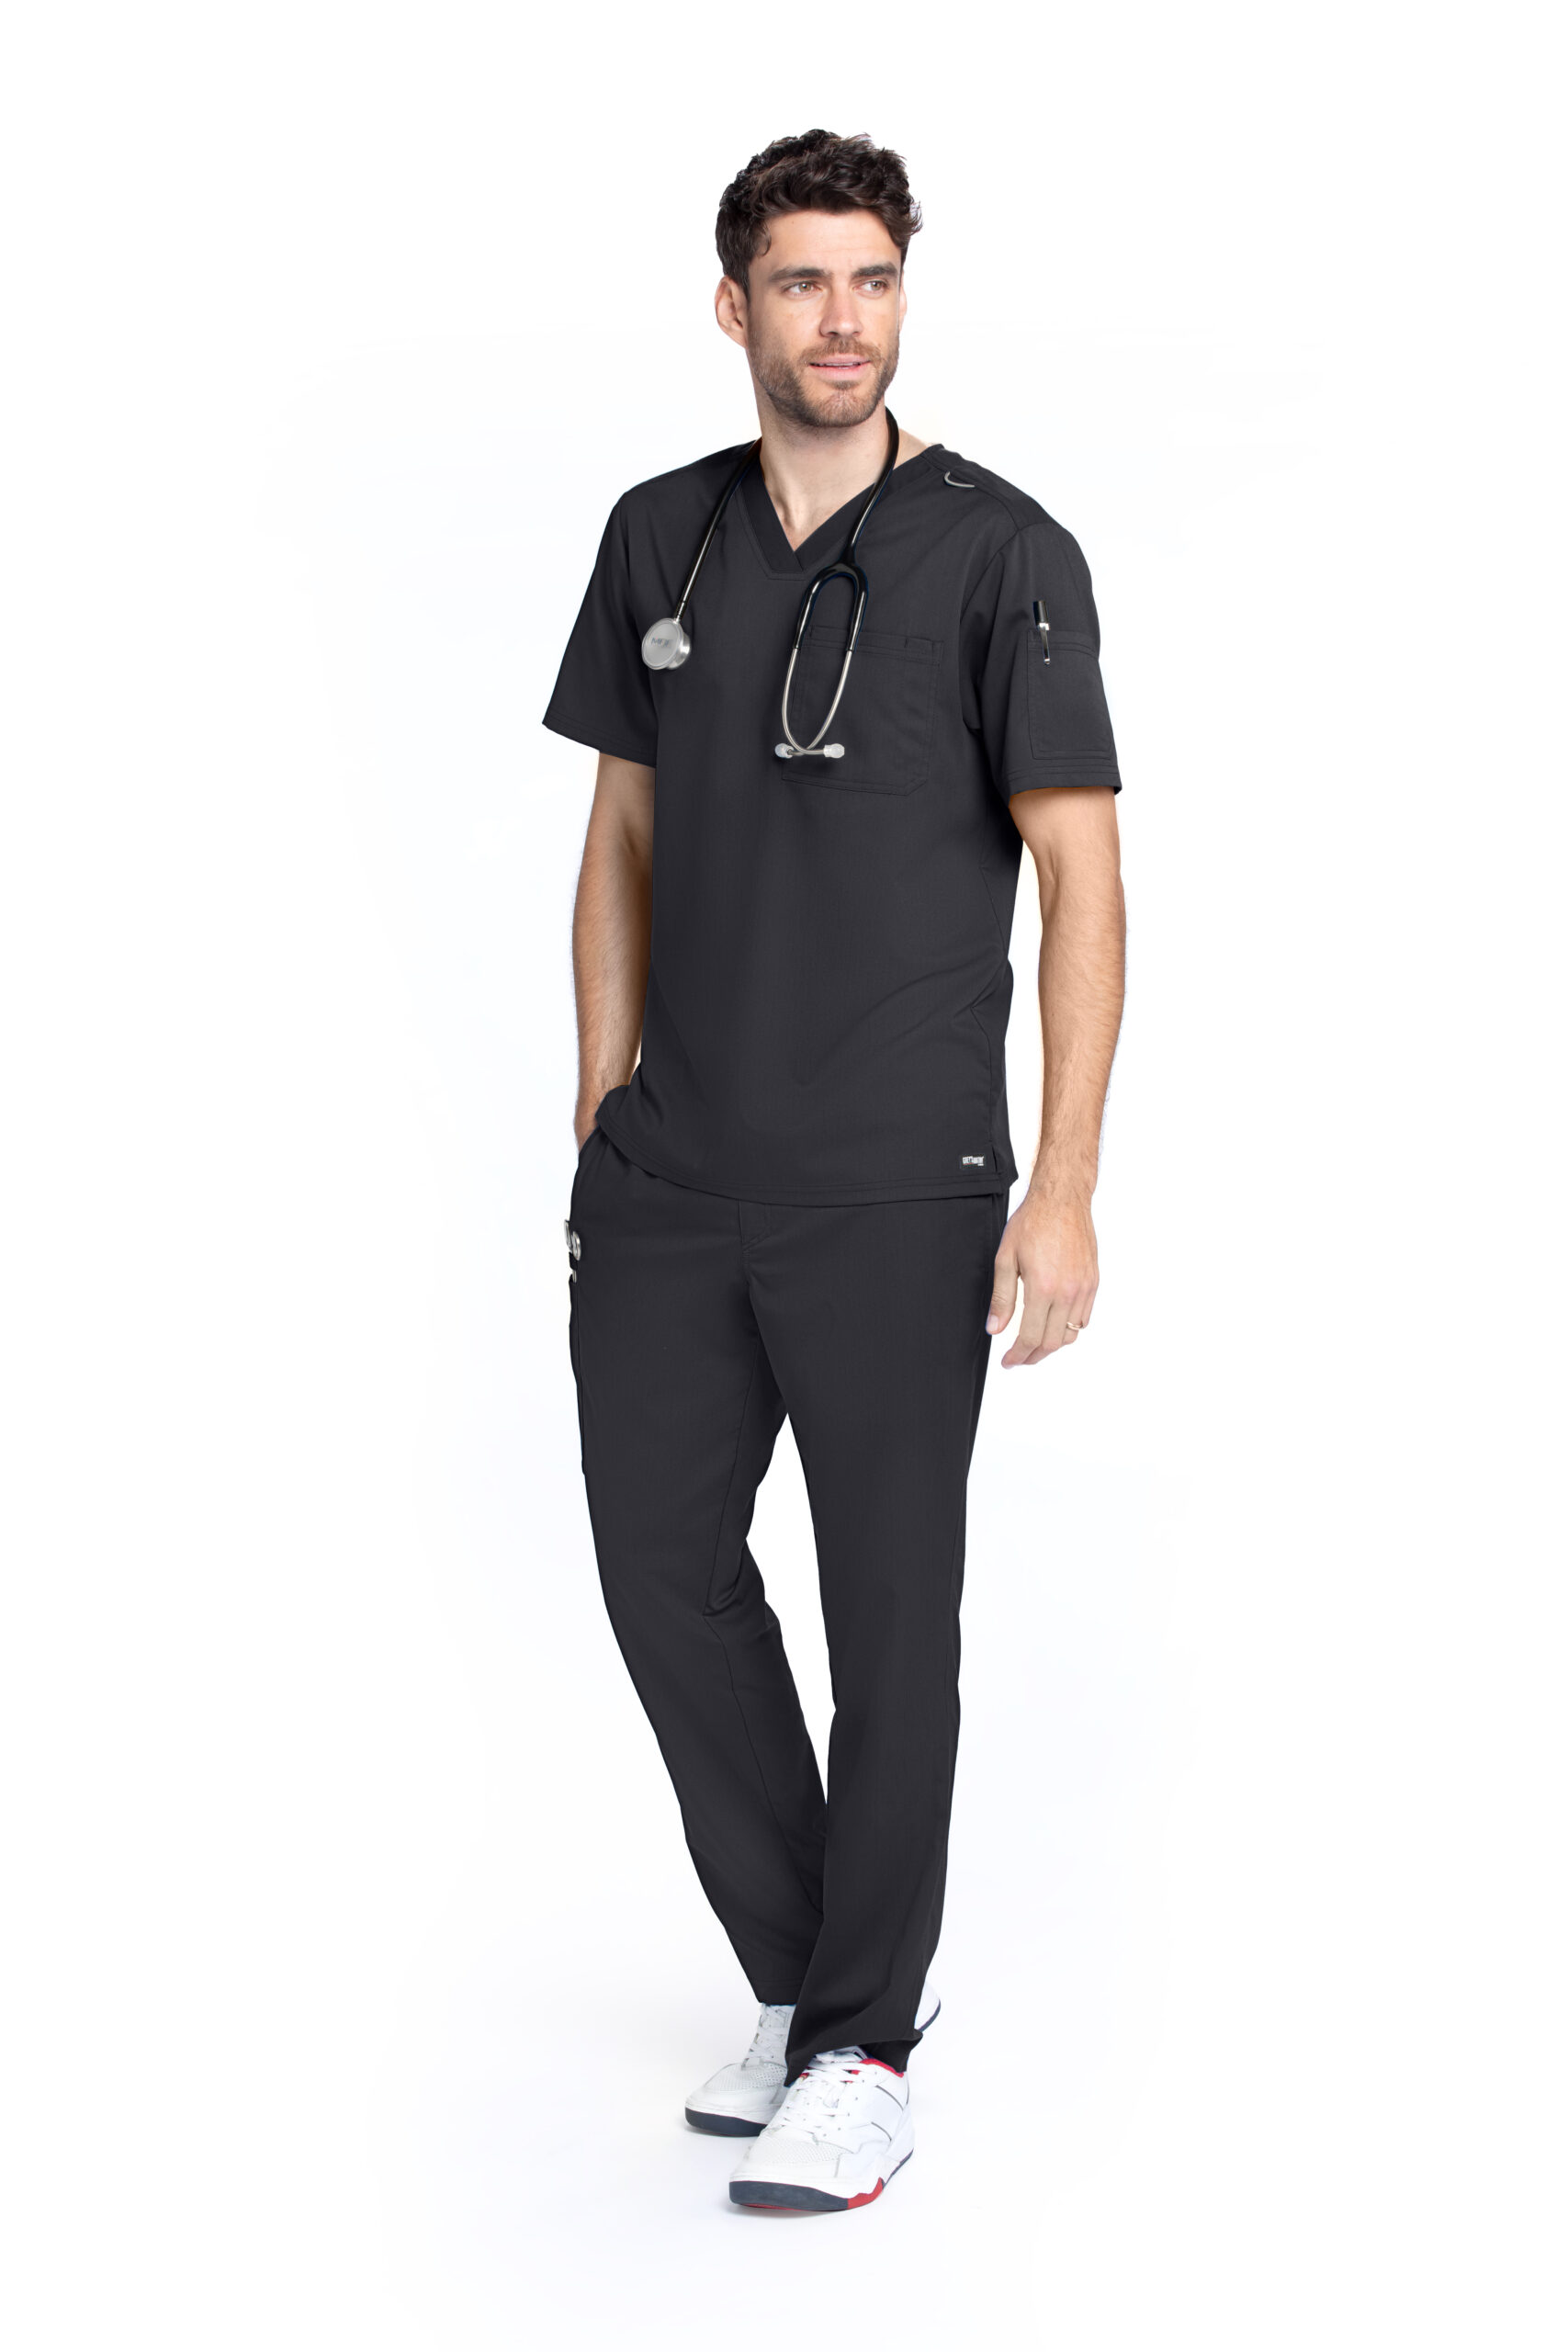 Grey's Anatomy Classic Evan Top - V-Neck Men's Scrub Top in Black